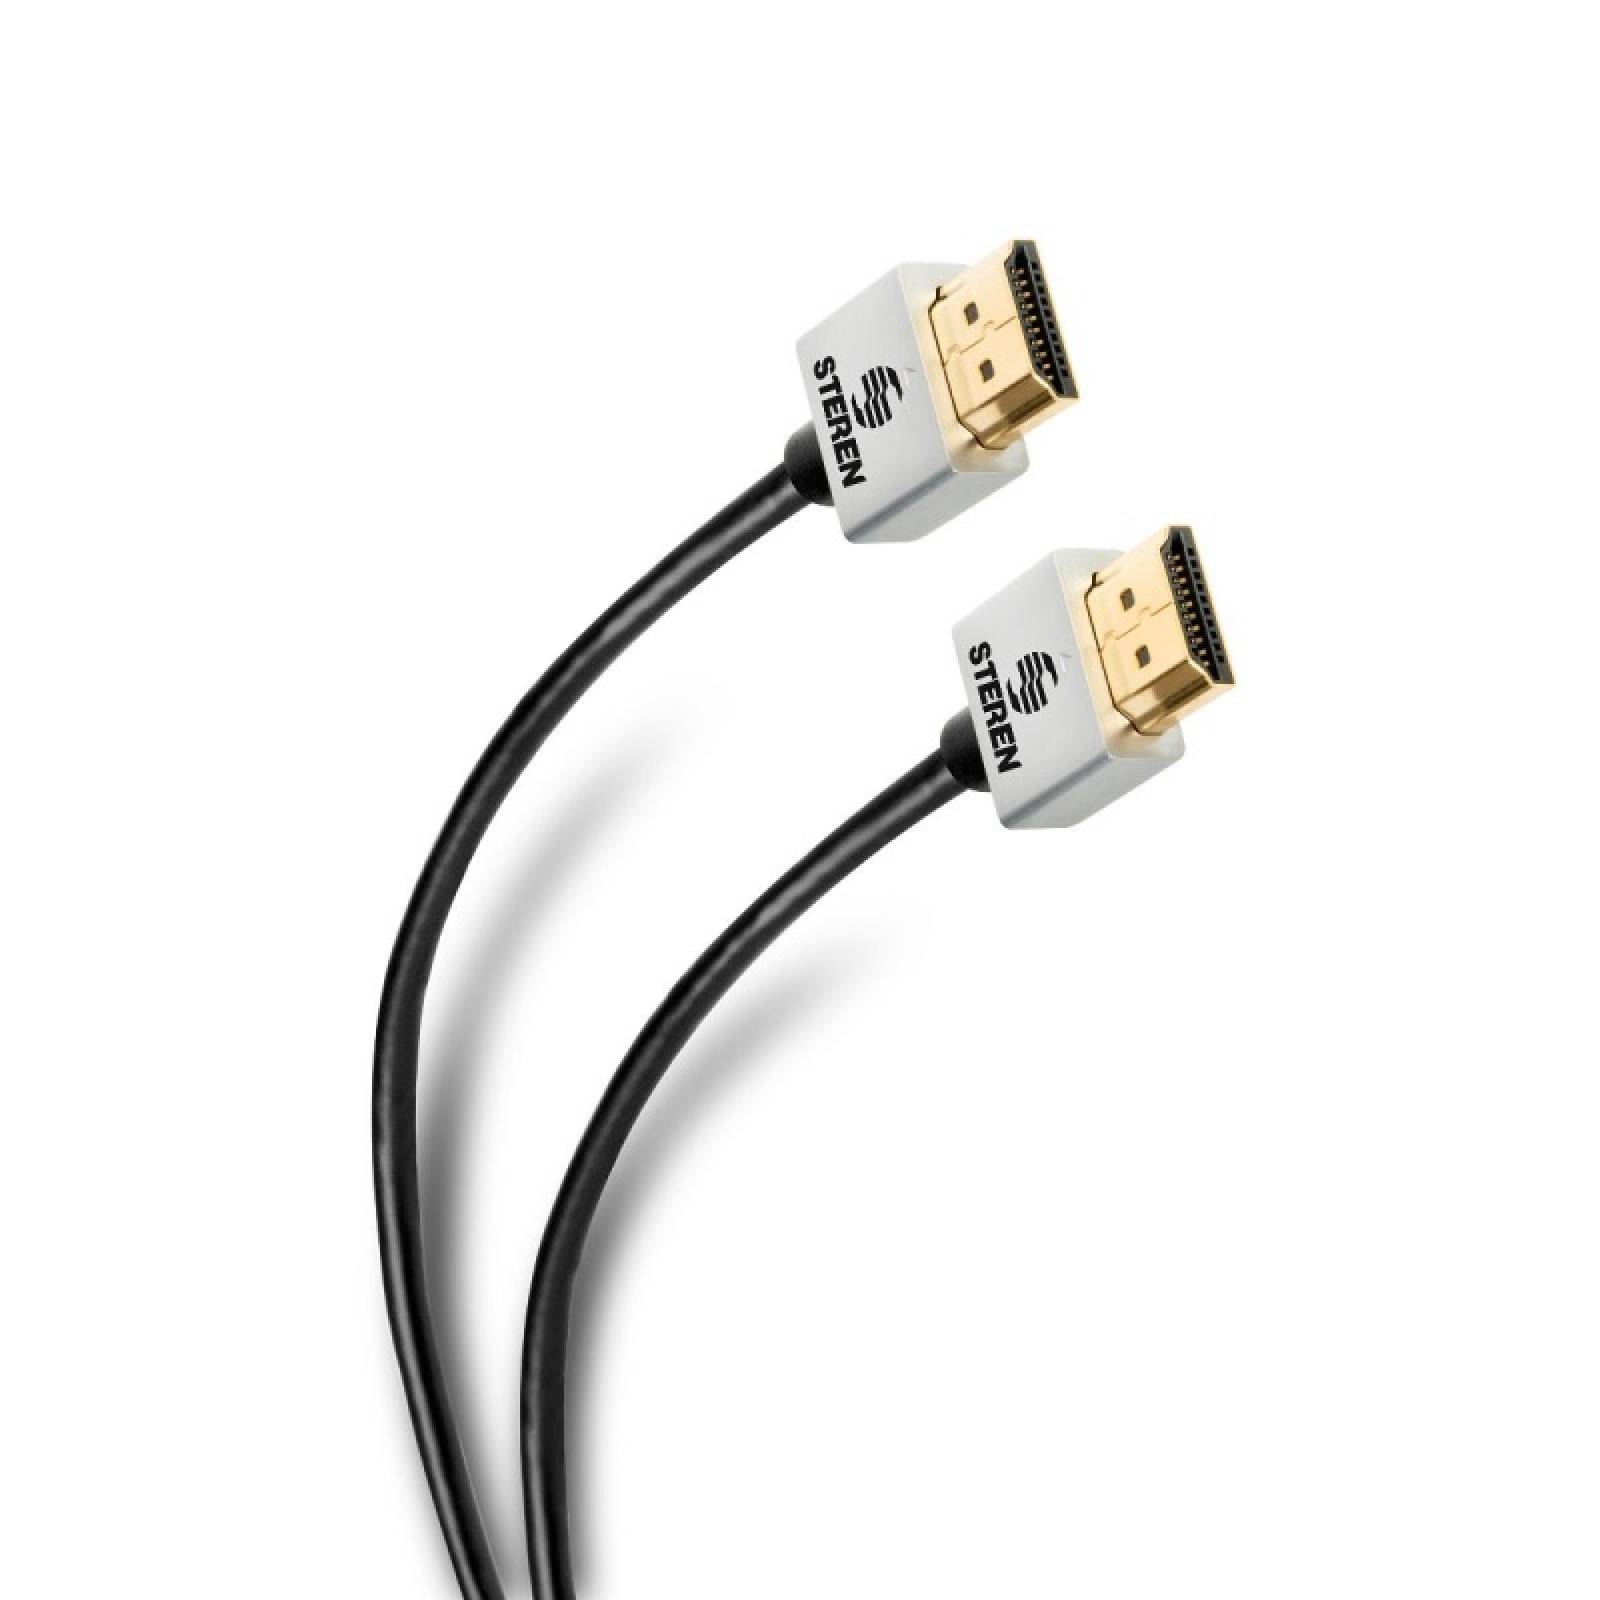 Cable Elite HDMI Ultra Delgado 3.6m Carcasas Aluminio Steren